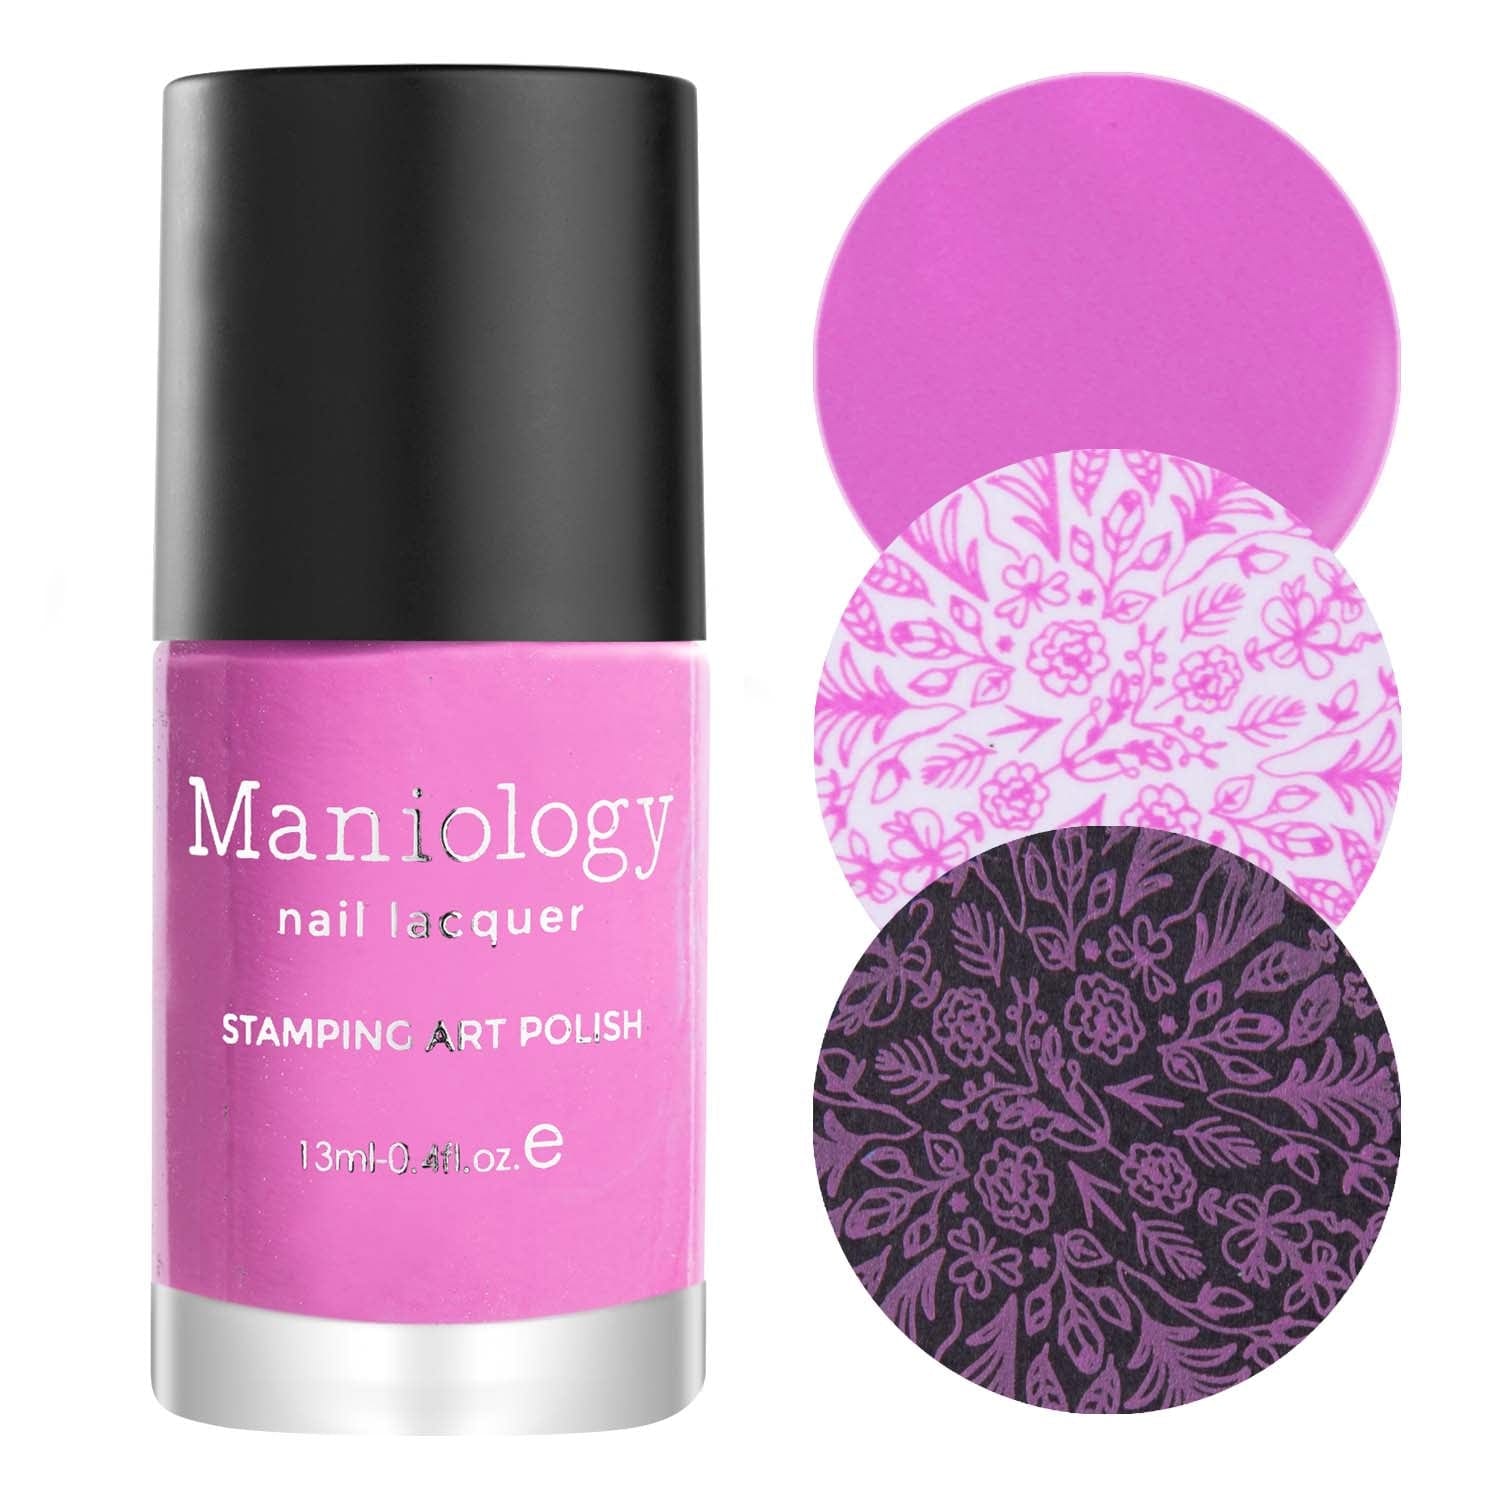 Polish Cream | Pink Stamping Maniology Rose Primerose